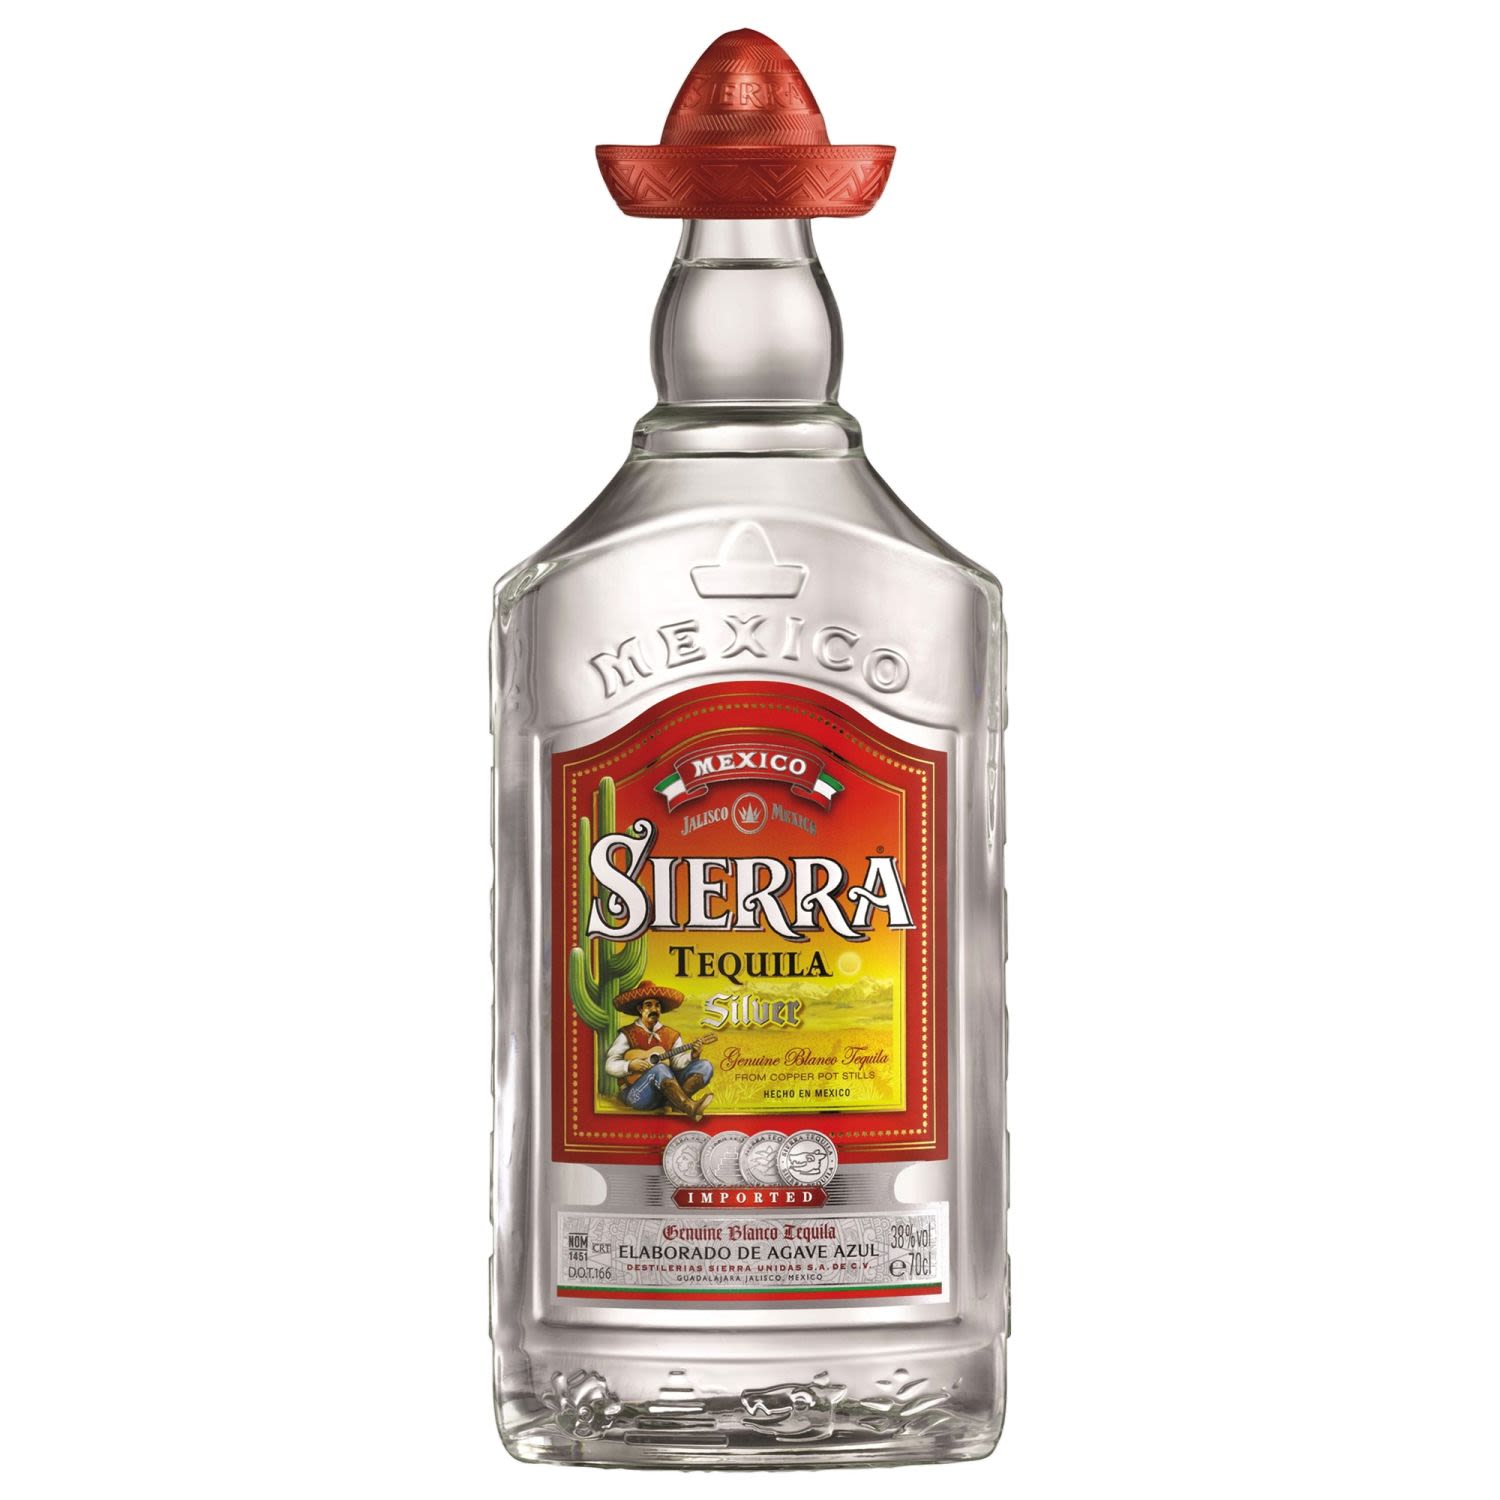 Sierra Tequila Silver 700mL<br /> <br />Alcohol Volume: 38.00%<br /><br />Pack Format: Bottle<br /><br />Standard Drinks: 21</br /><br />Pack Type: Bottle<br />